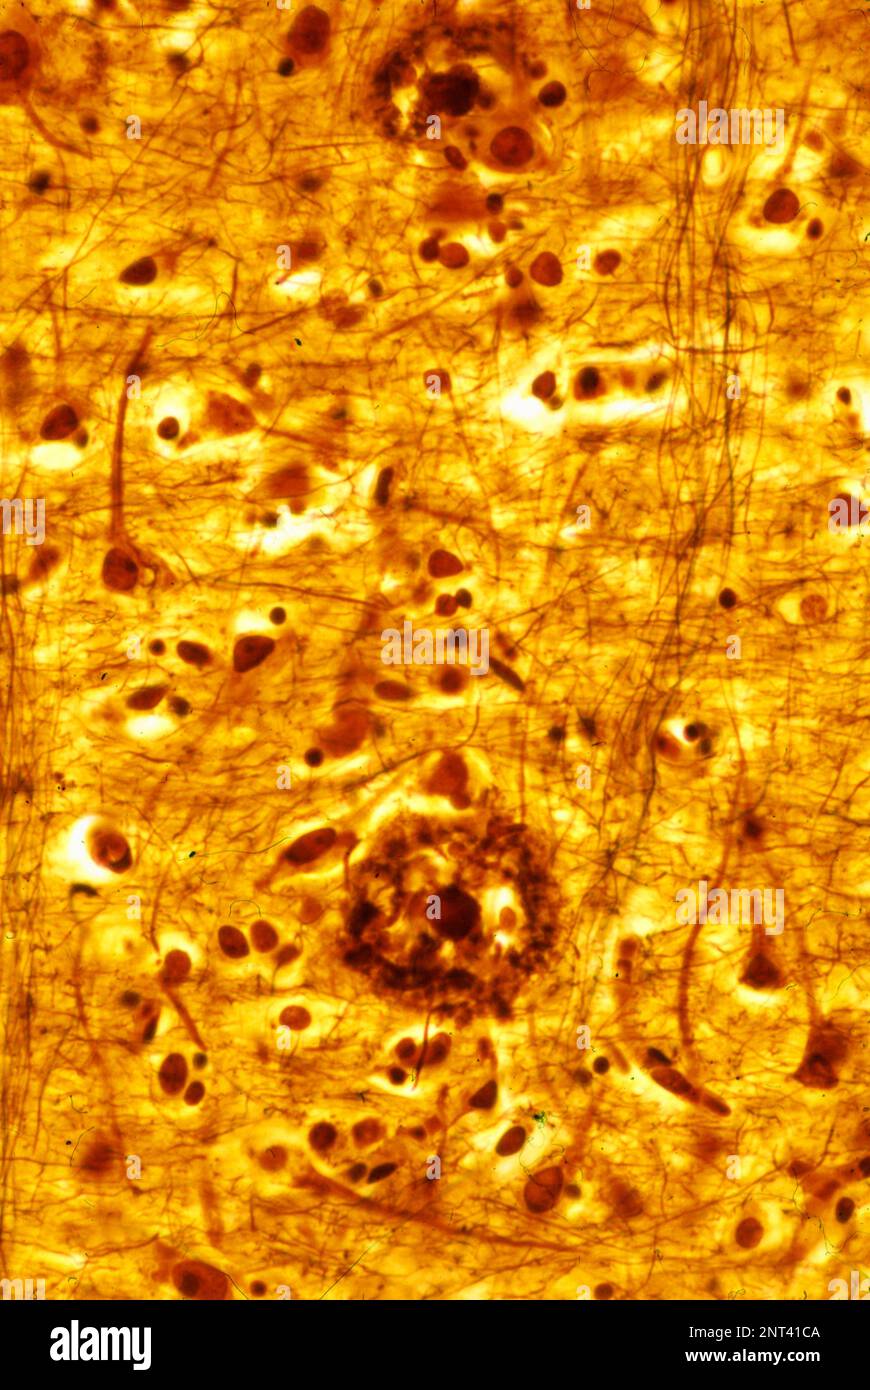 Microscope léger micrographe d'un cortex cérébral humain montrant deux plaques séniles, colorées avec une méthode de l'argent. Ce sont des dépôts extracellulaires de l'AM Banque D'Images